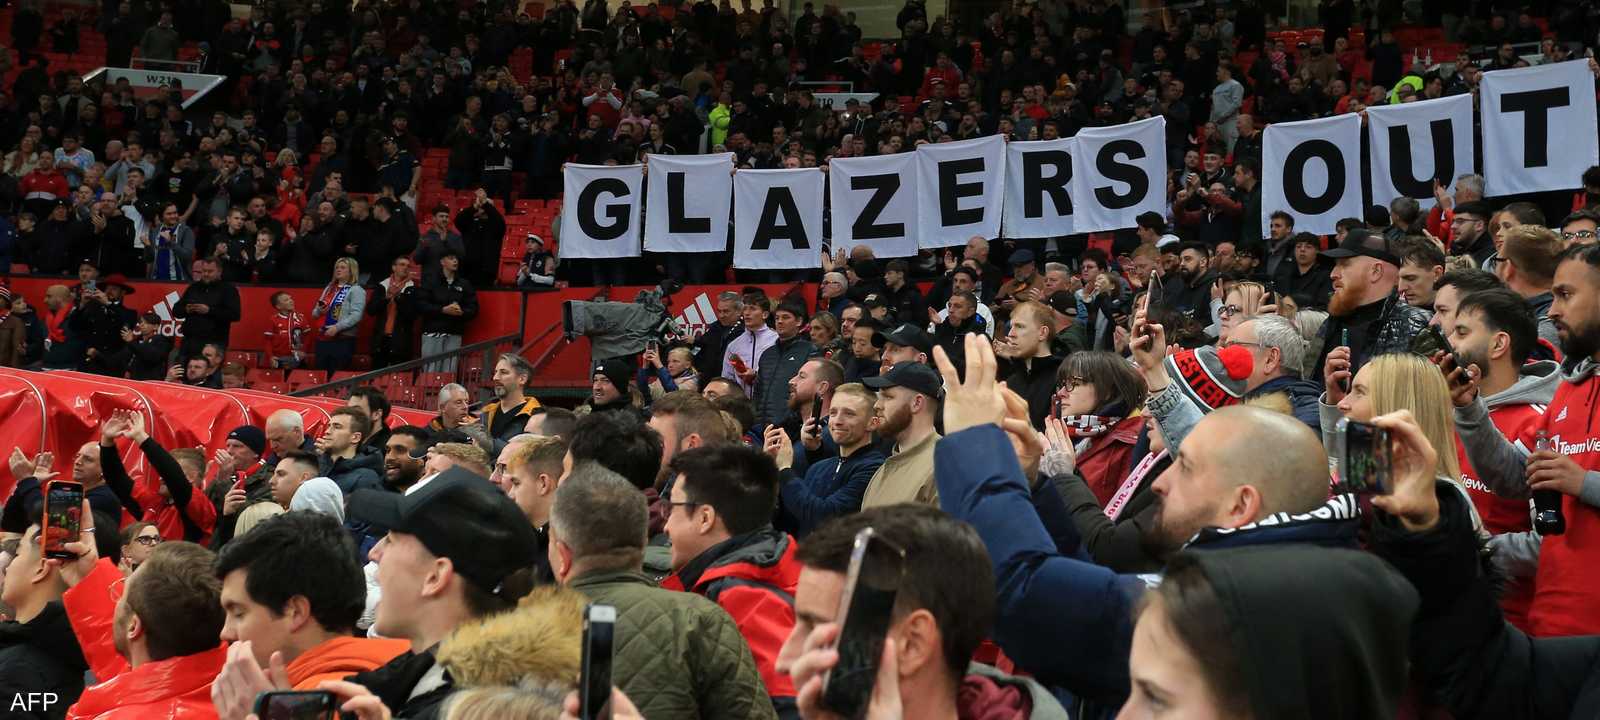 جماهير مانشستر يونايتد يطالبون برحيل عائلة غلازرز - أرشيفية